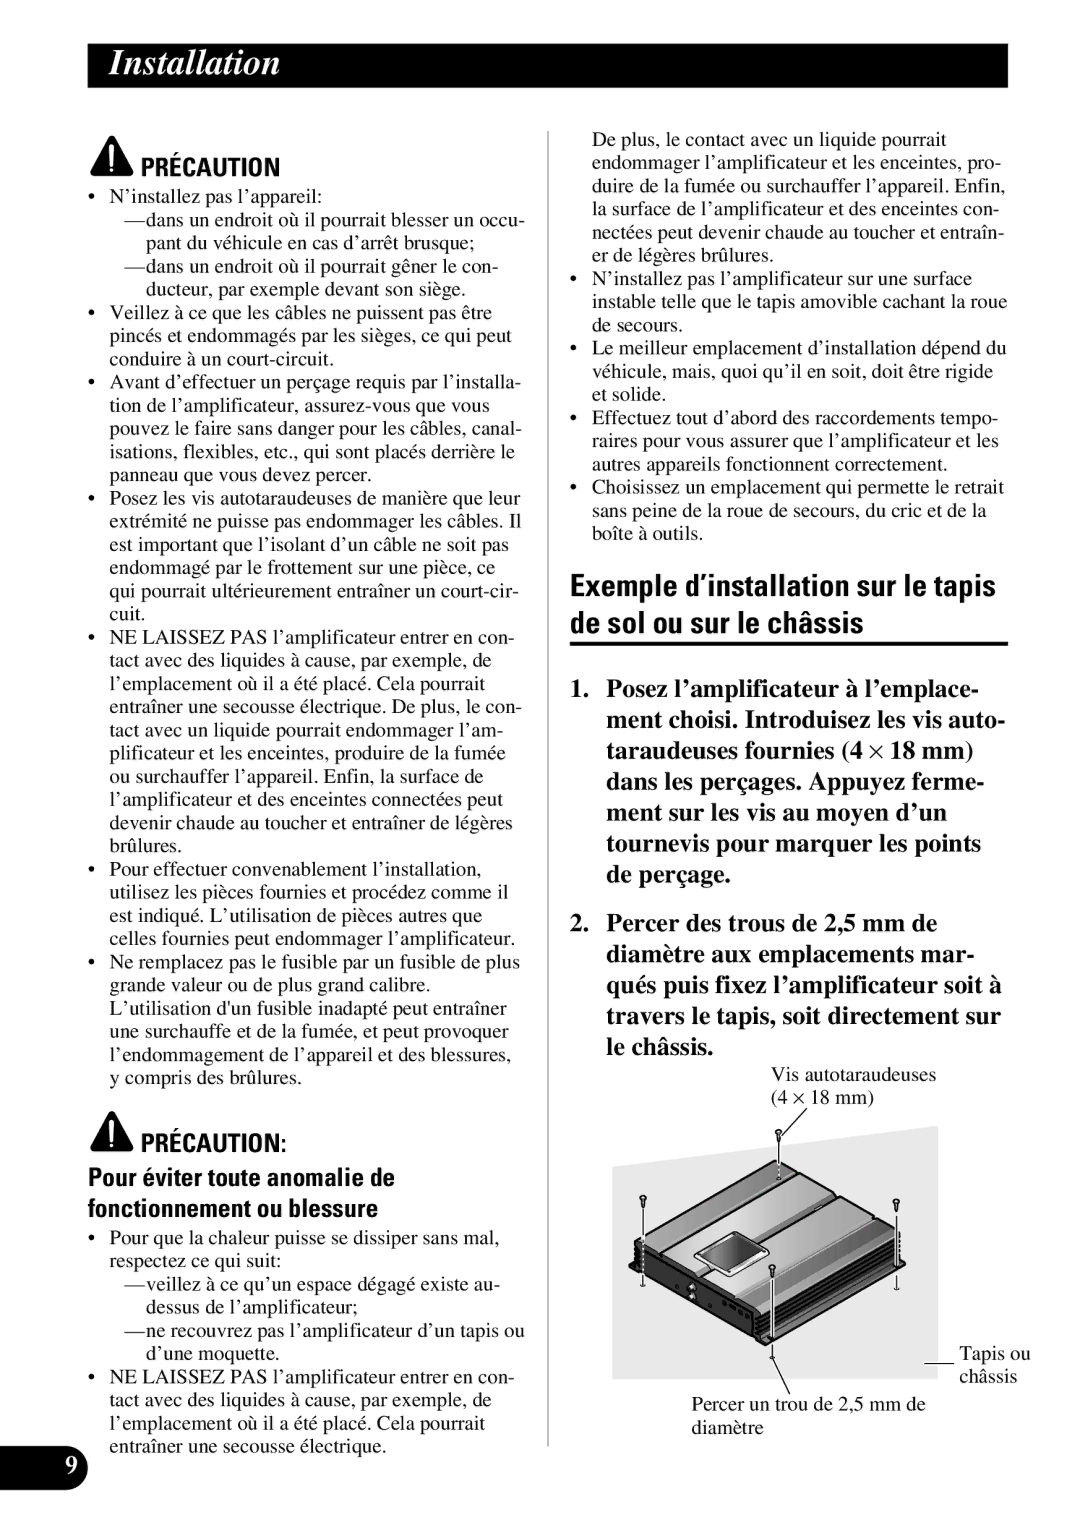 Pioneer PRS-A500 owner manual Exemple d’installation sur le tapis de sol ou sur le châssis, ’installez pas l’appareil 